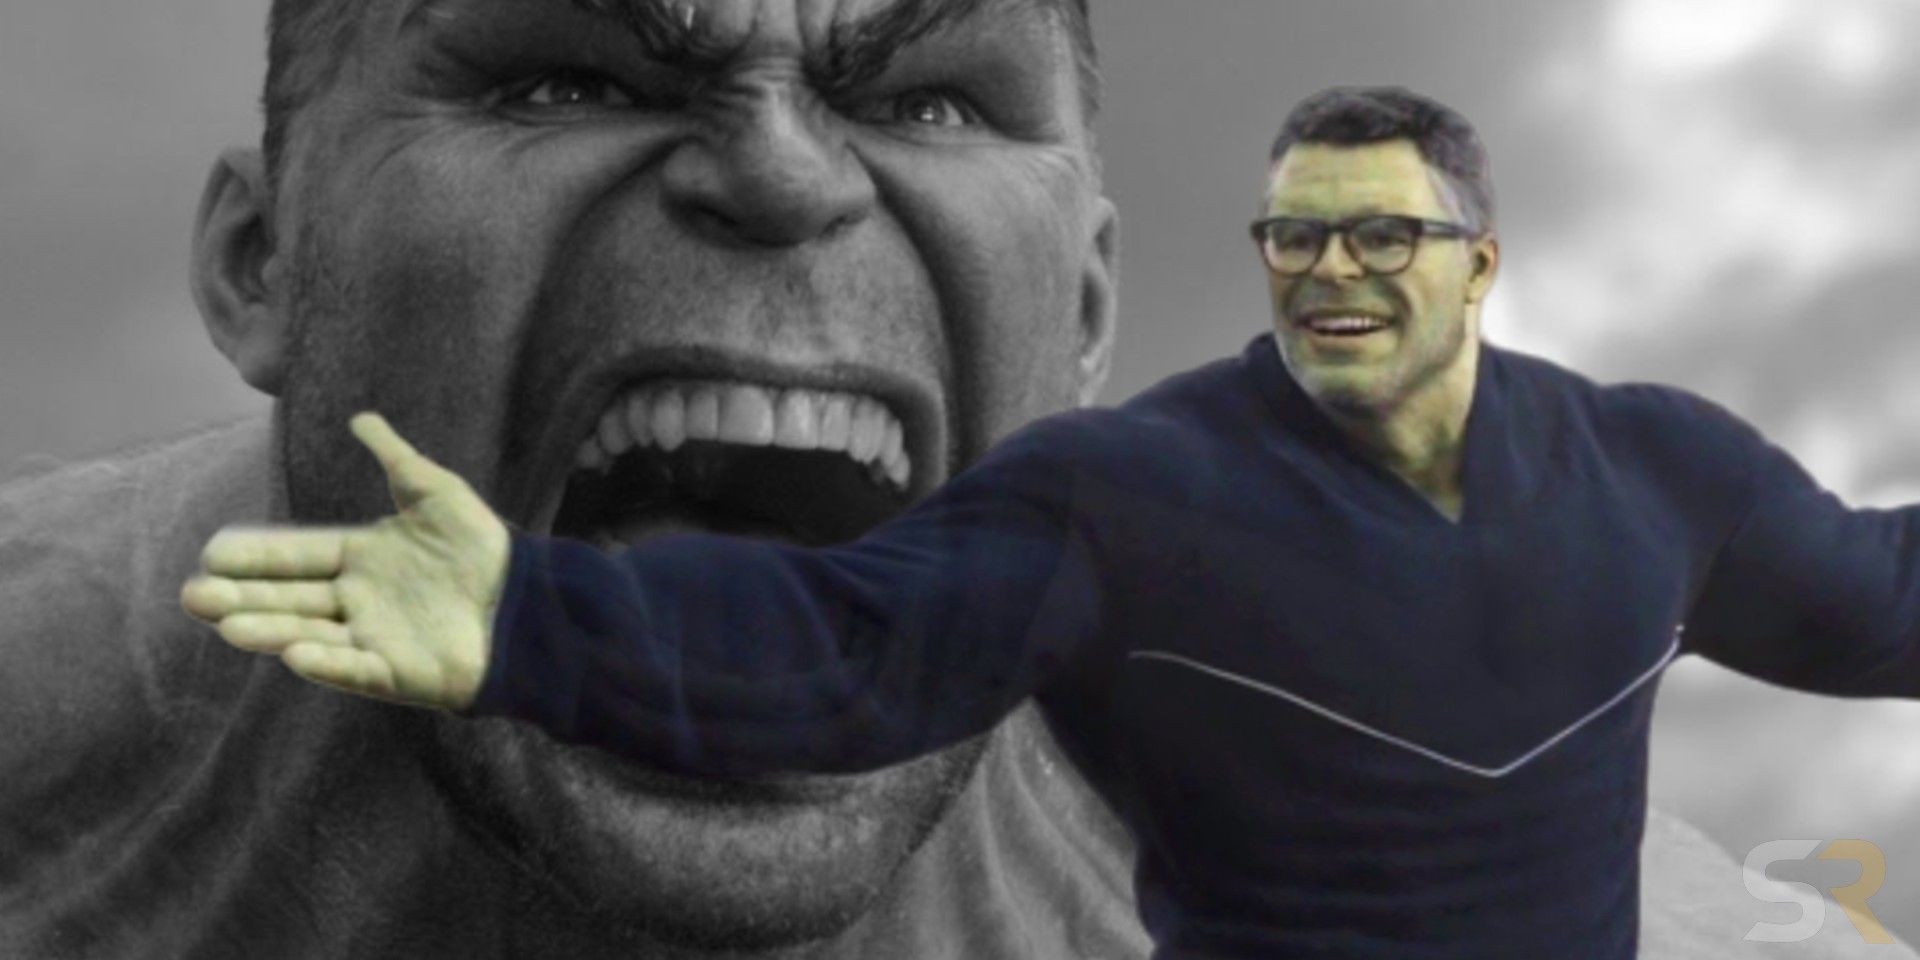 Smart Hulk Avengers Endgame